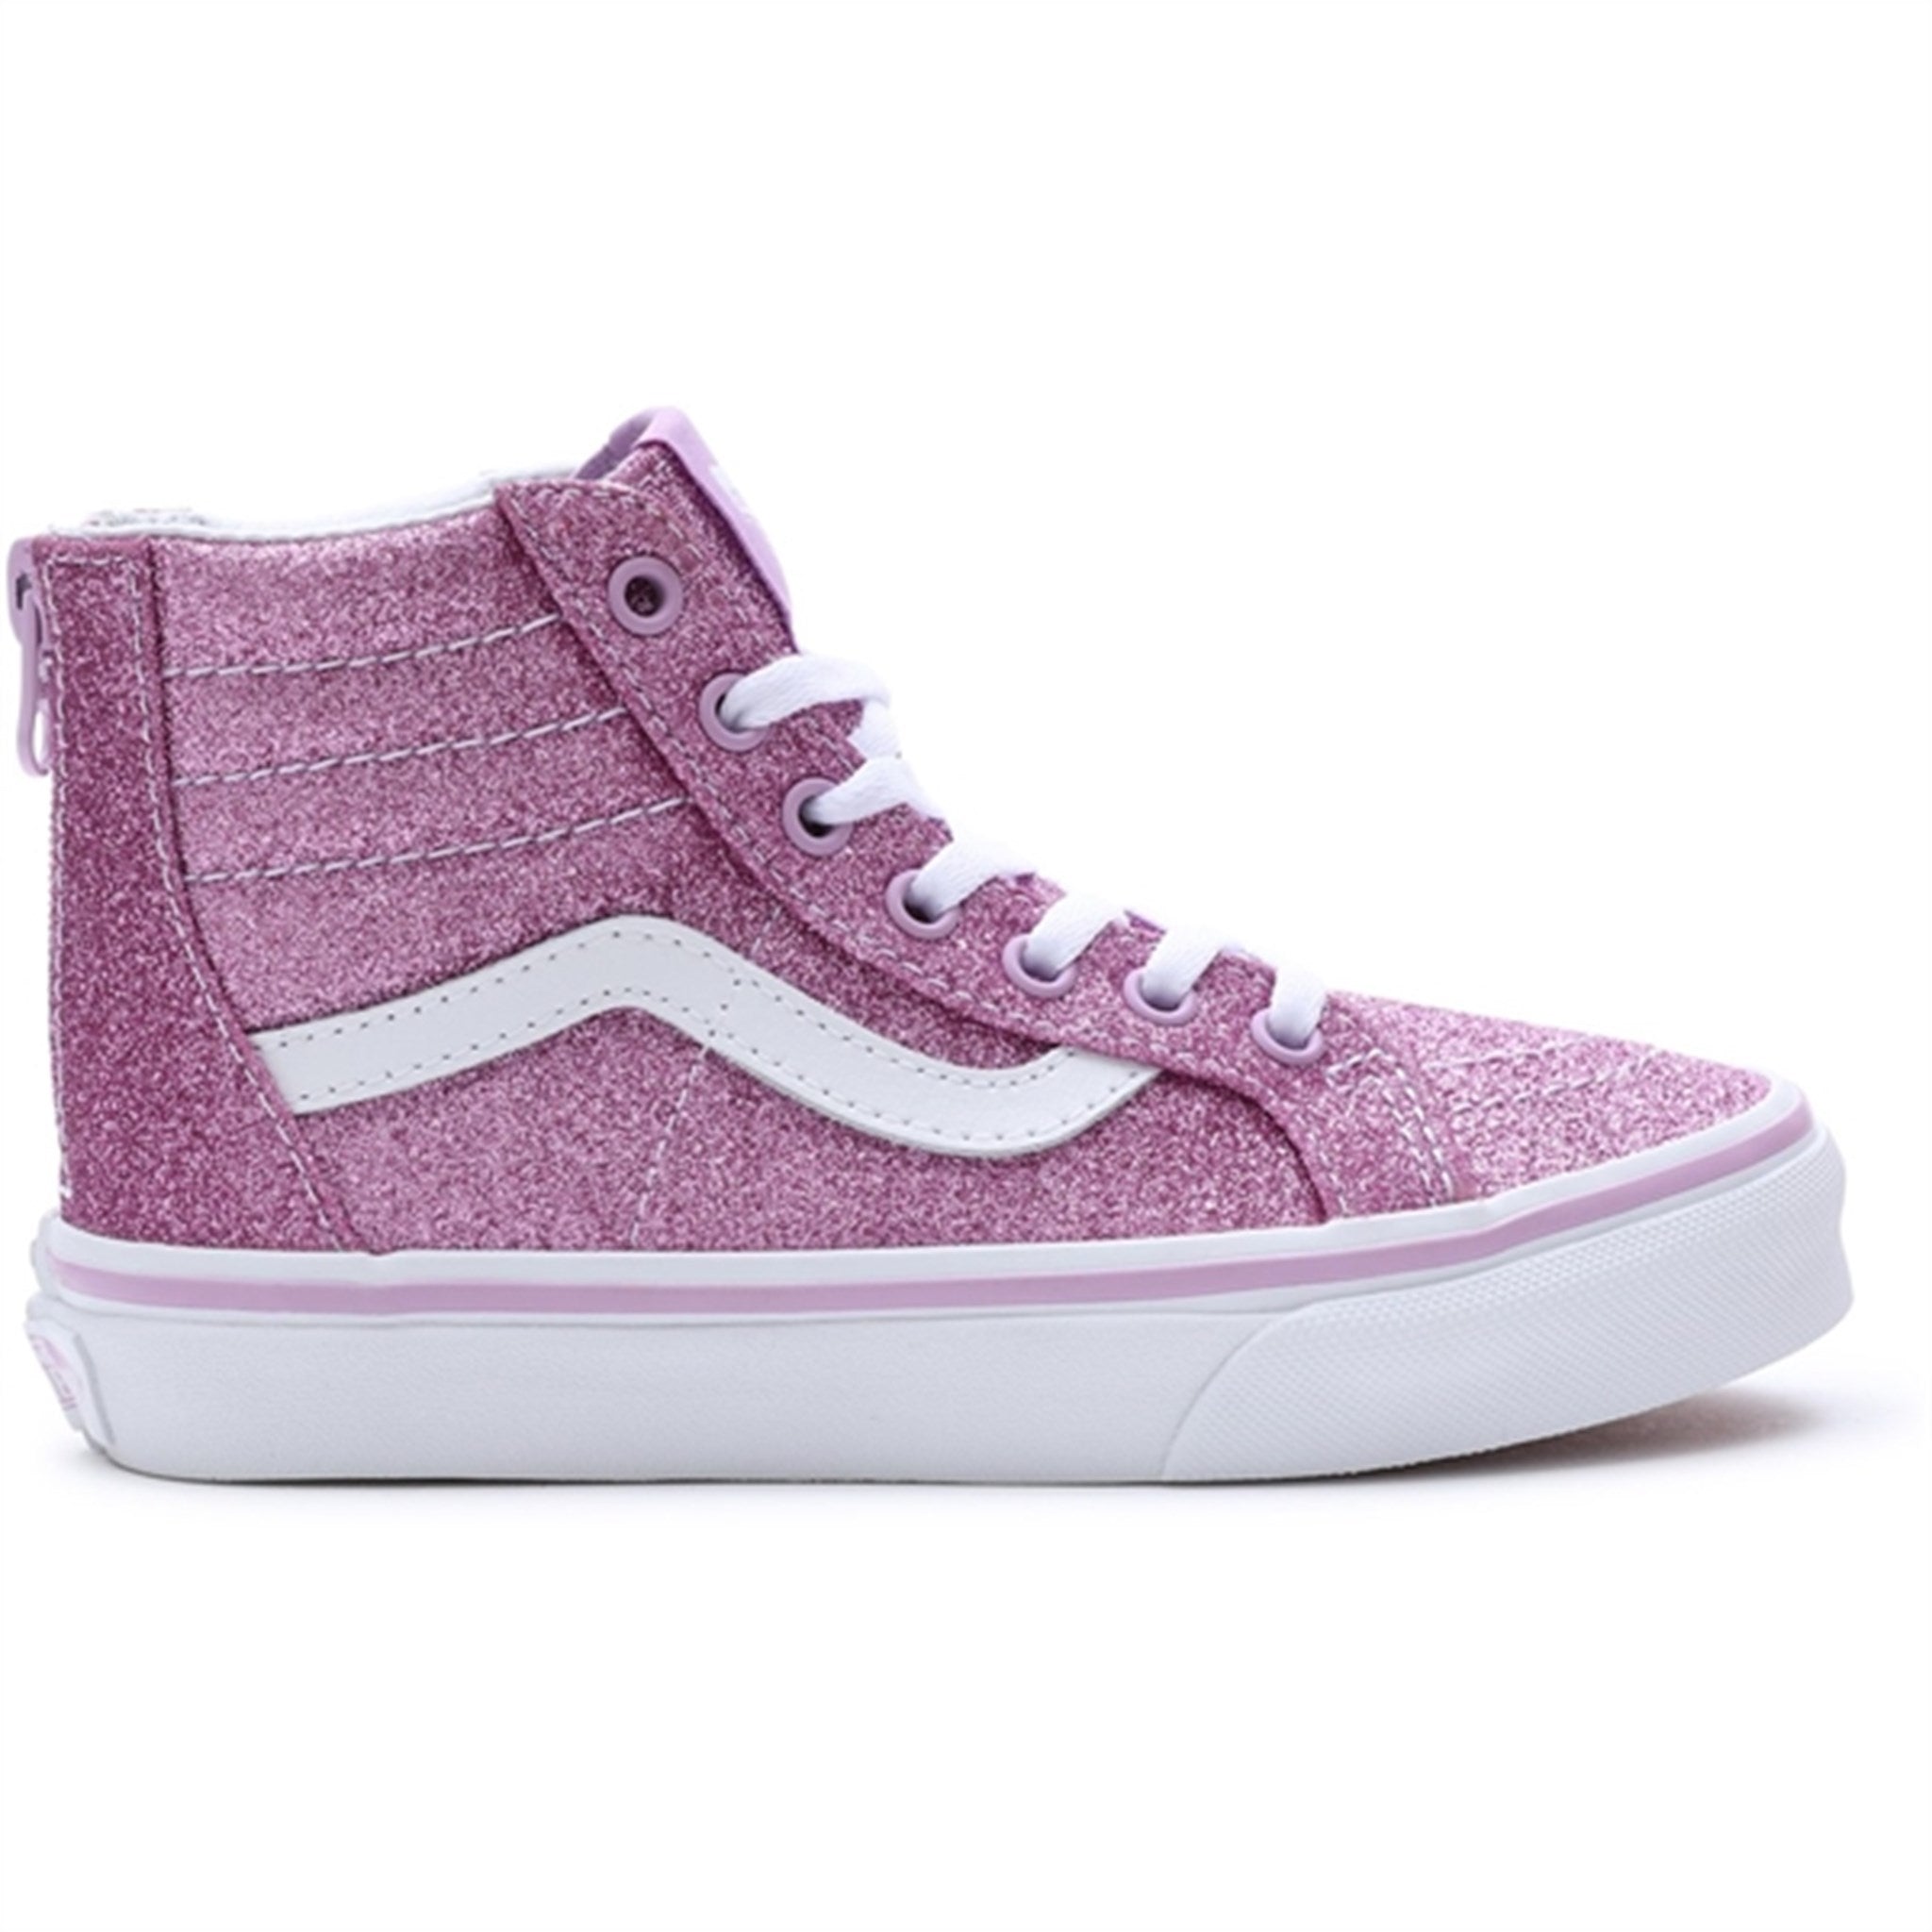 VANS Uy Sk8-Hi Zip Glitter Lilac Sneakers